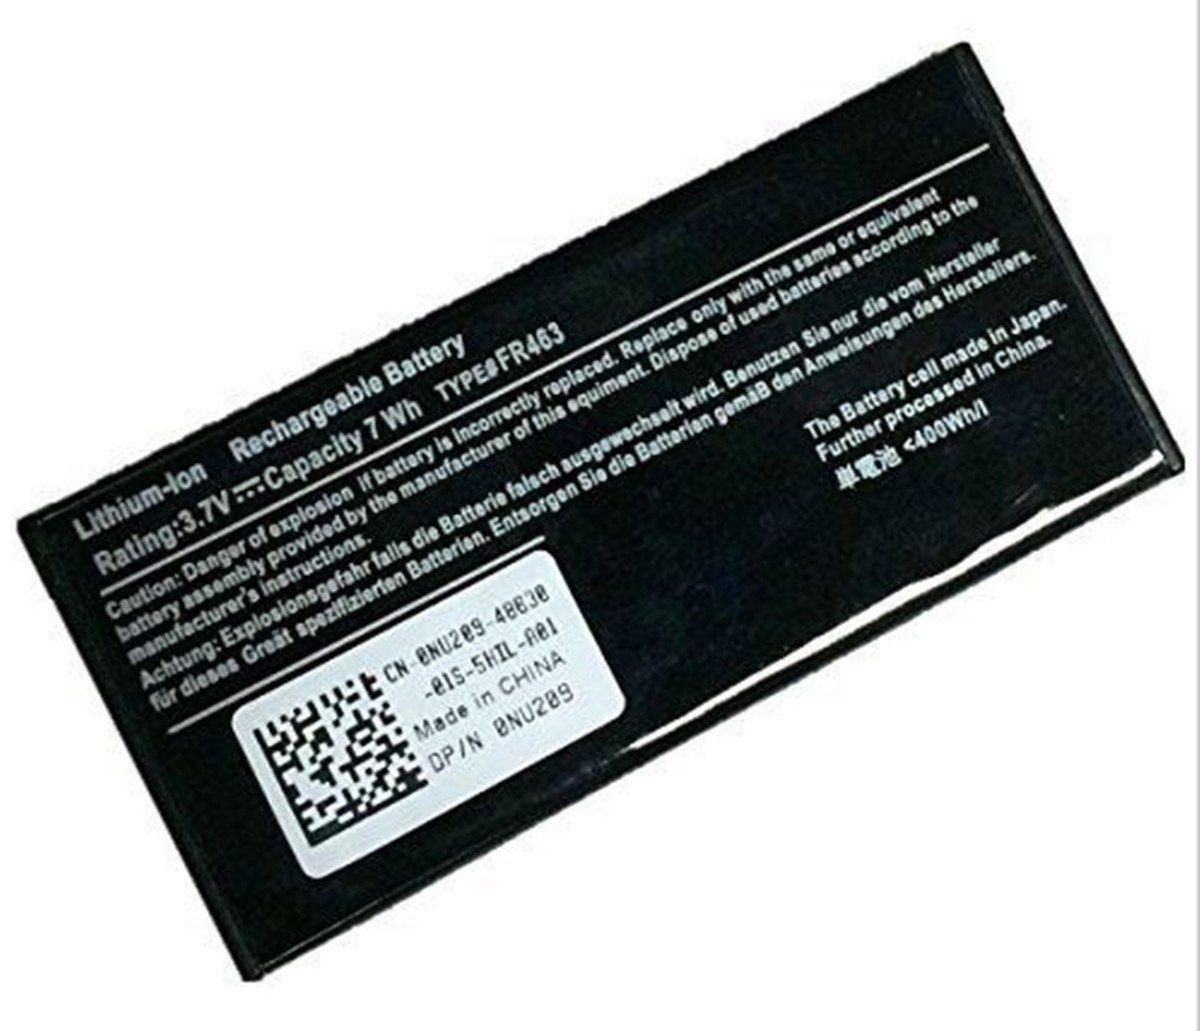 batterie Dell PowerEdge 840, batteries Dell PowerEdge 840